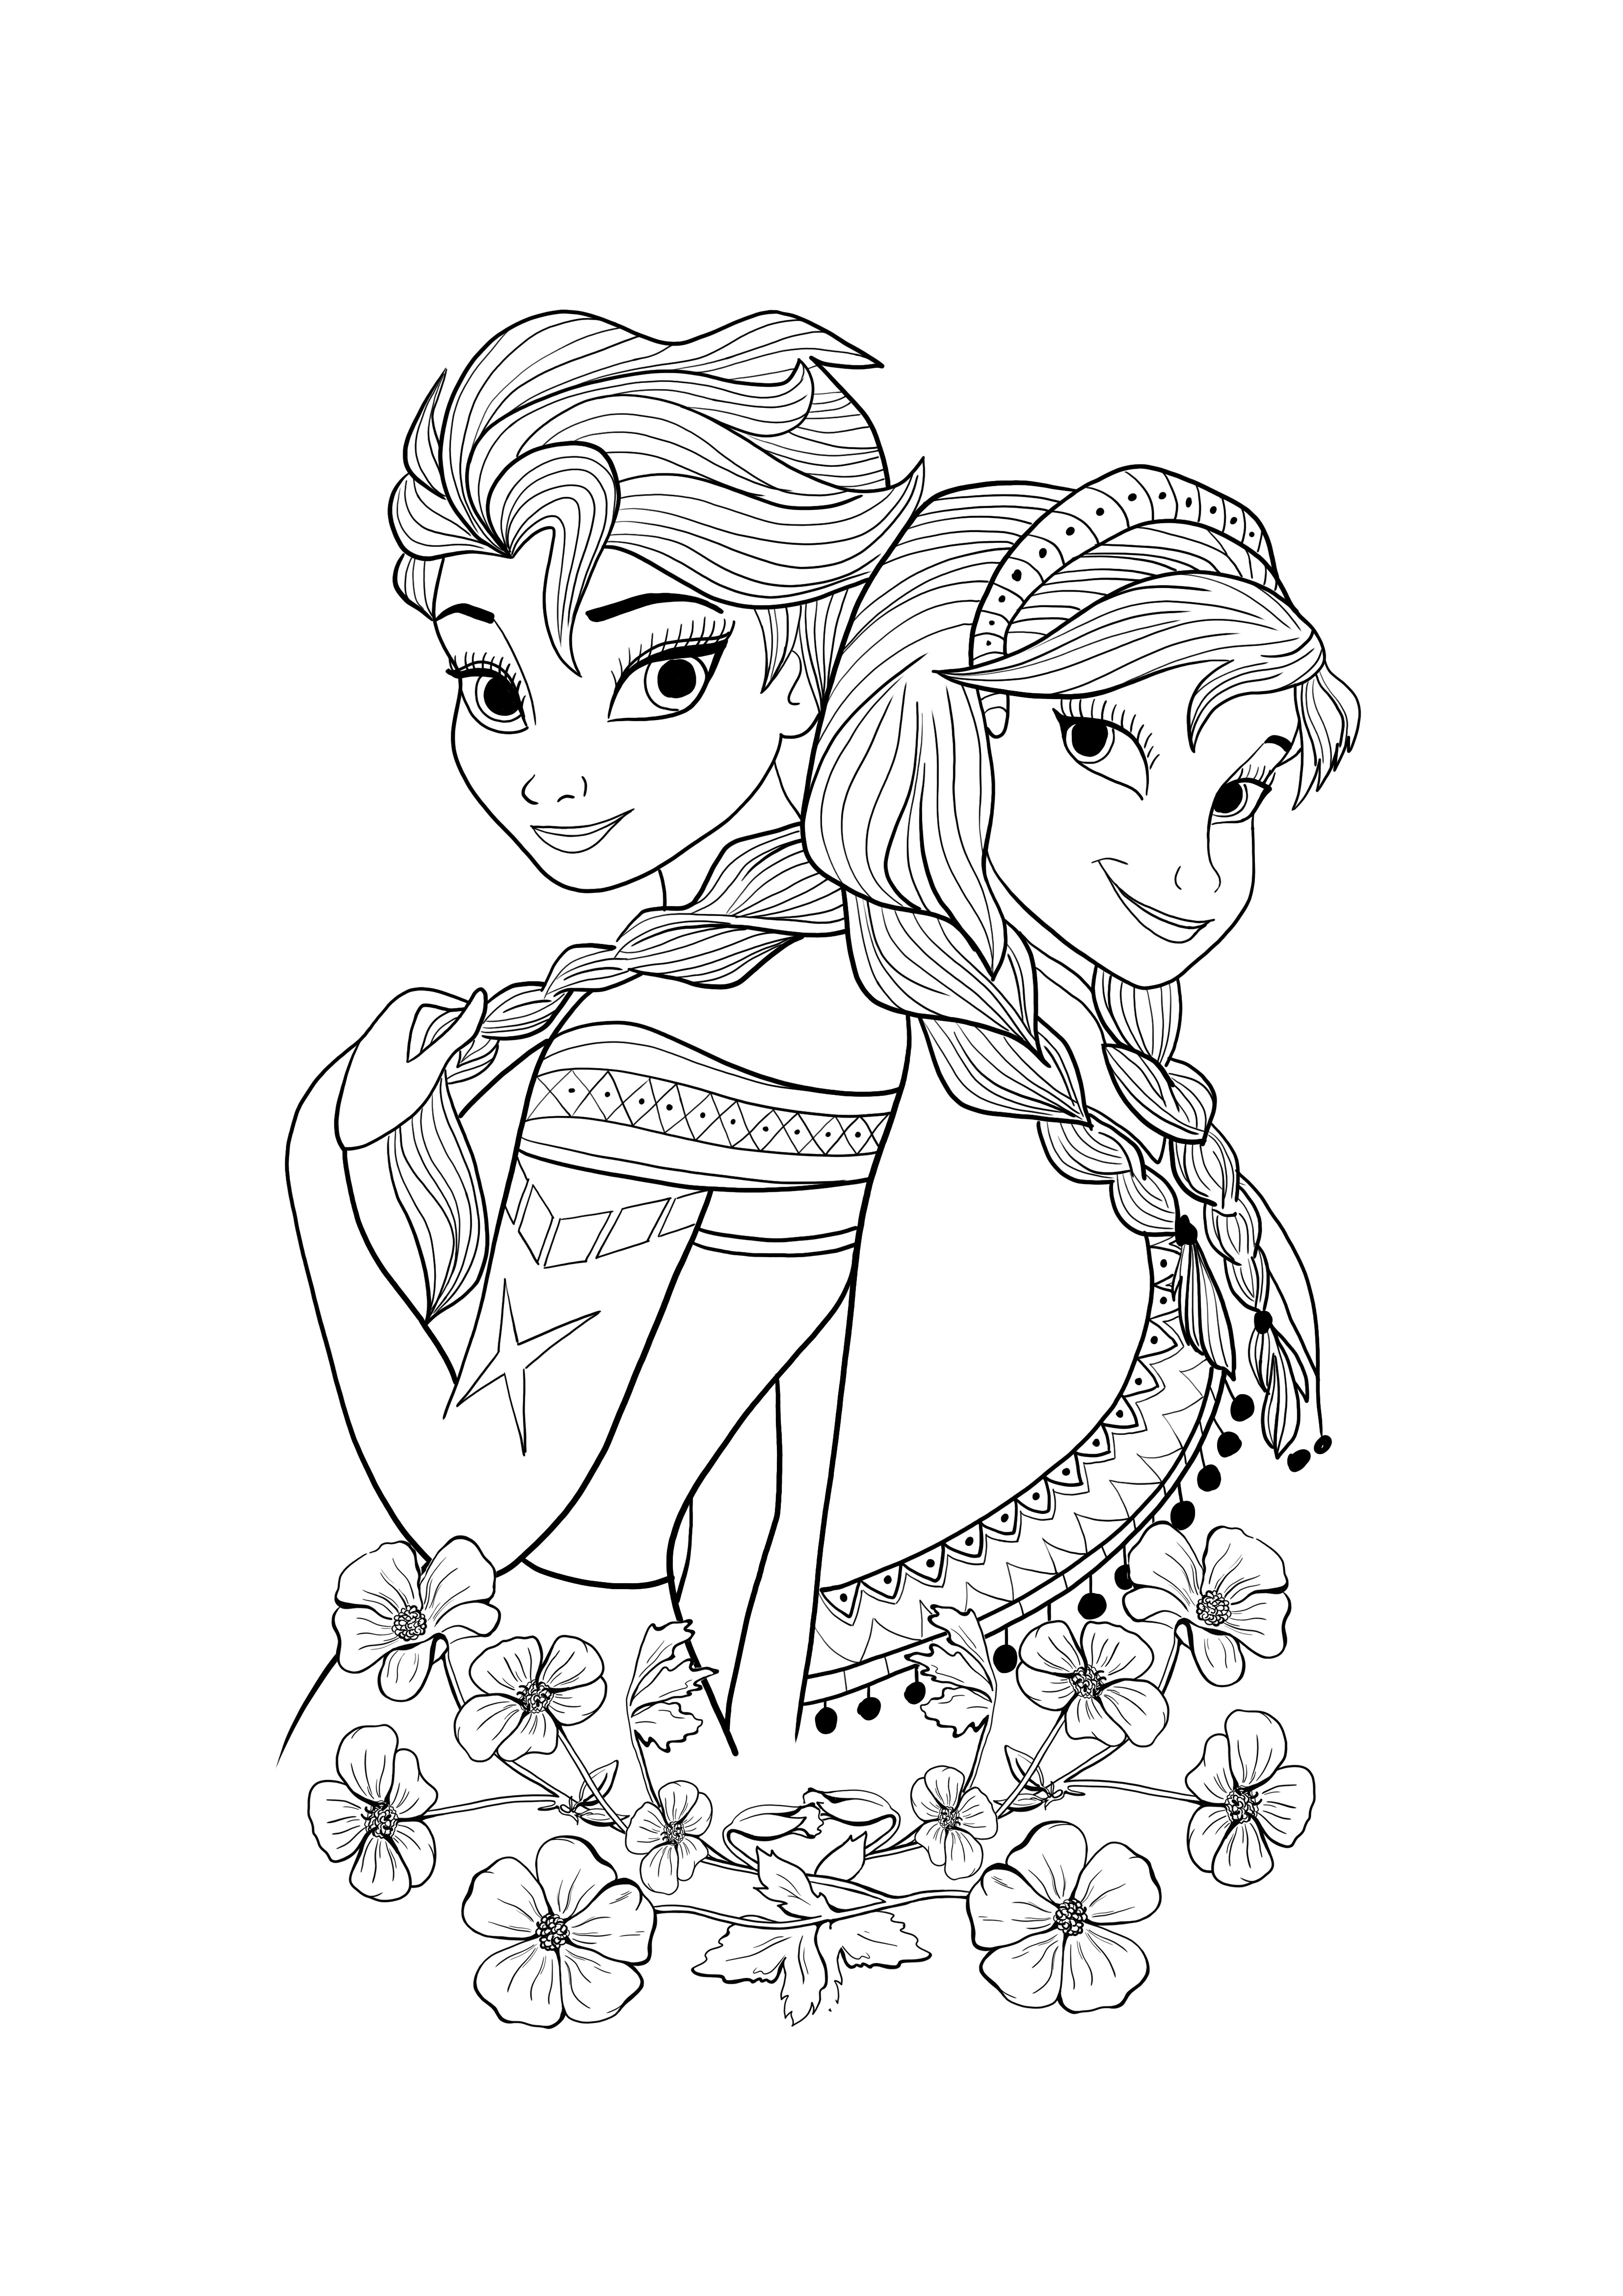 Elsa ja Ana ladata ja värittää ilmaiseksi